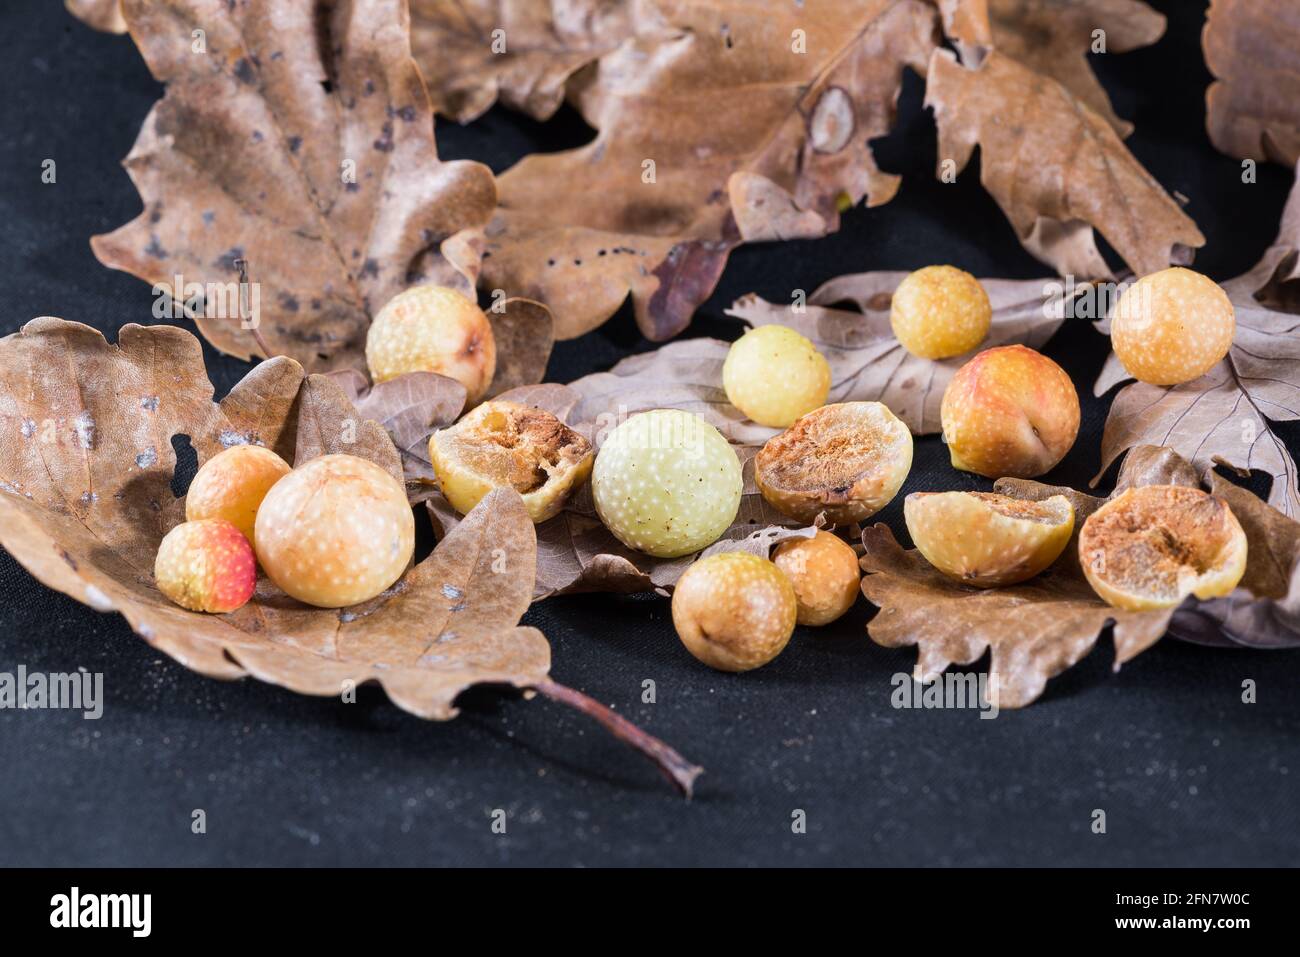 Galle de chêne ou pomme de chêne sur les feuilles d'un chêne. Les galettes de l'insecte Cynips quercusfolii, ravageur de la plante du chêne, Italie Banque D'Images